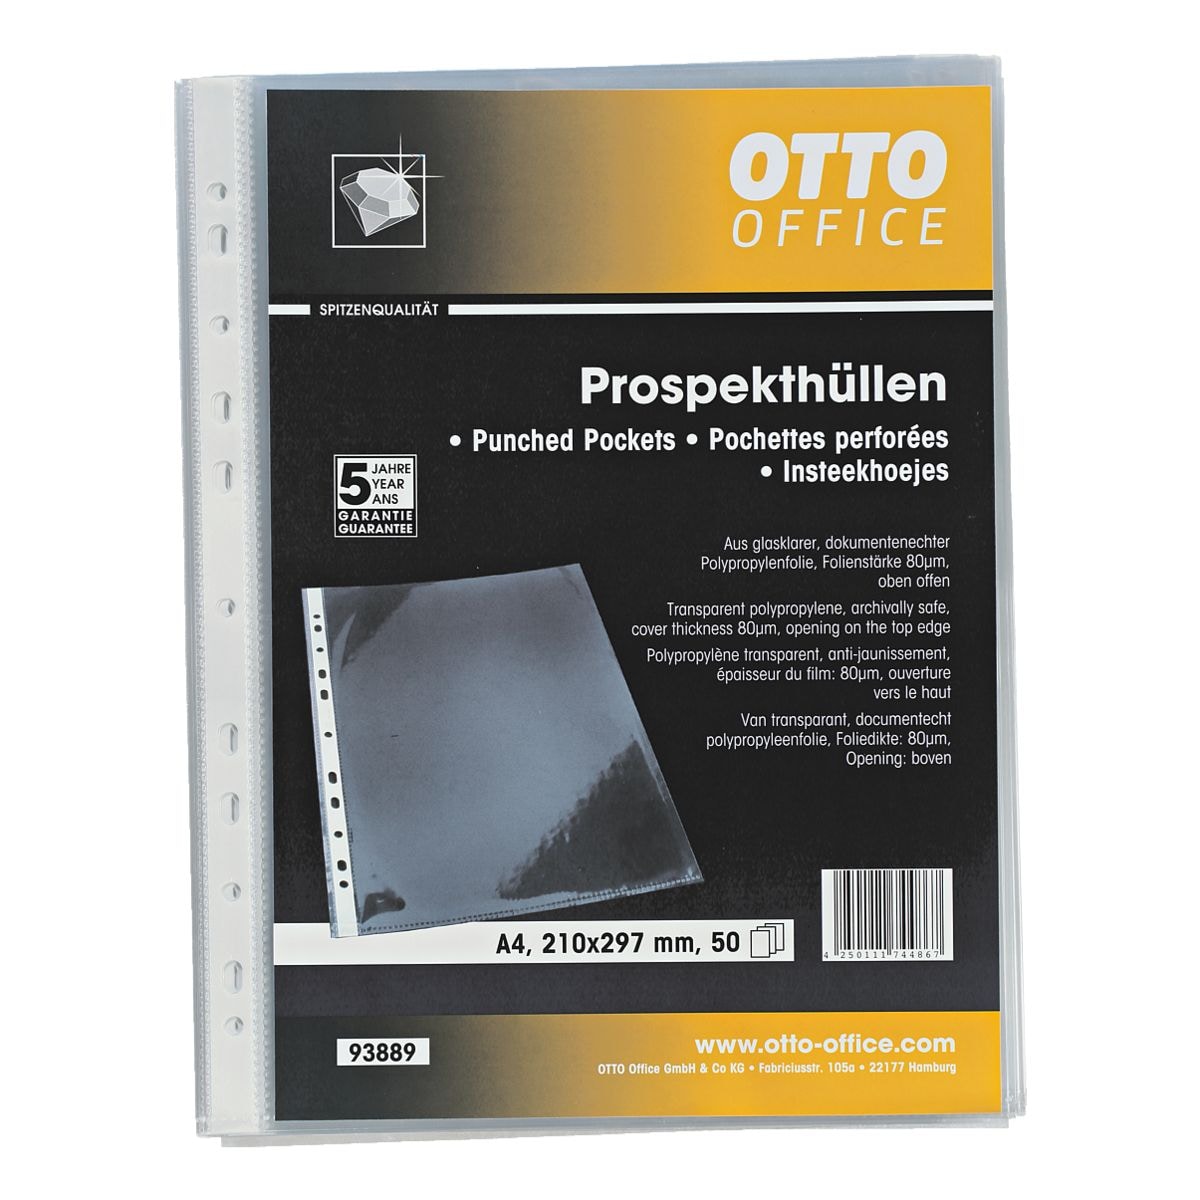 OTTO Office Premium Prospekthlle Premium A4 glasklar, oben offen - 50 Stck